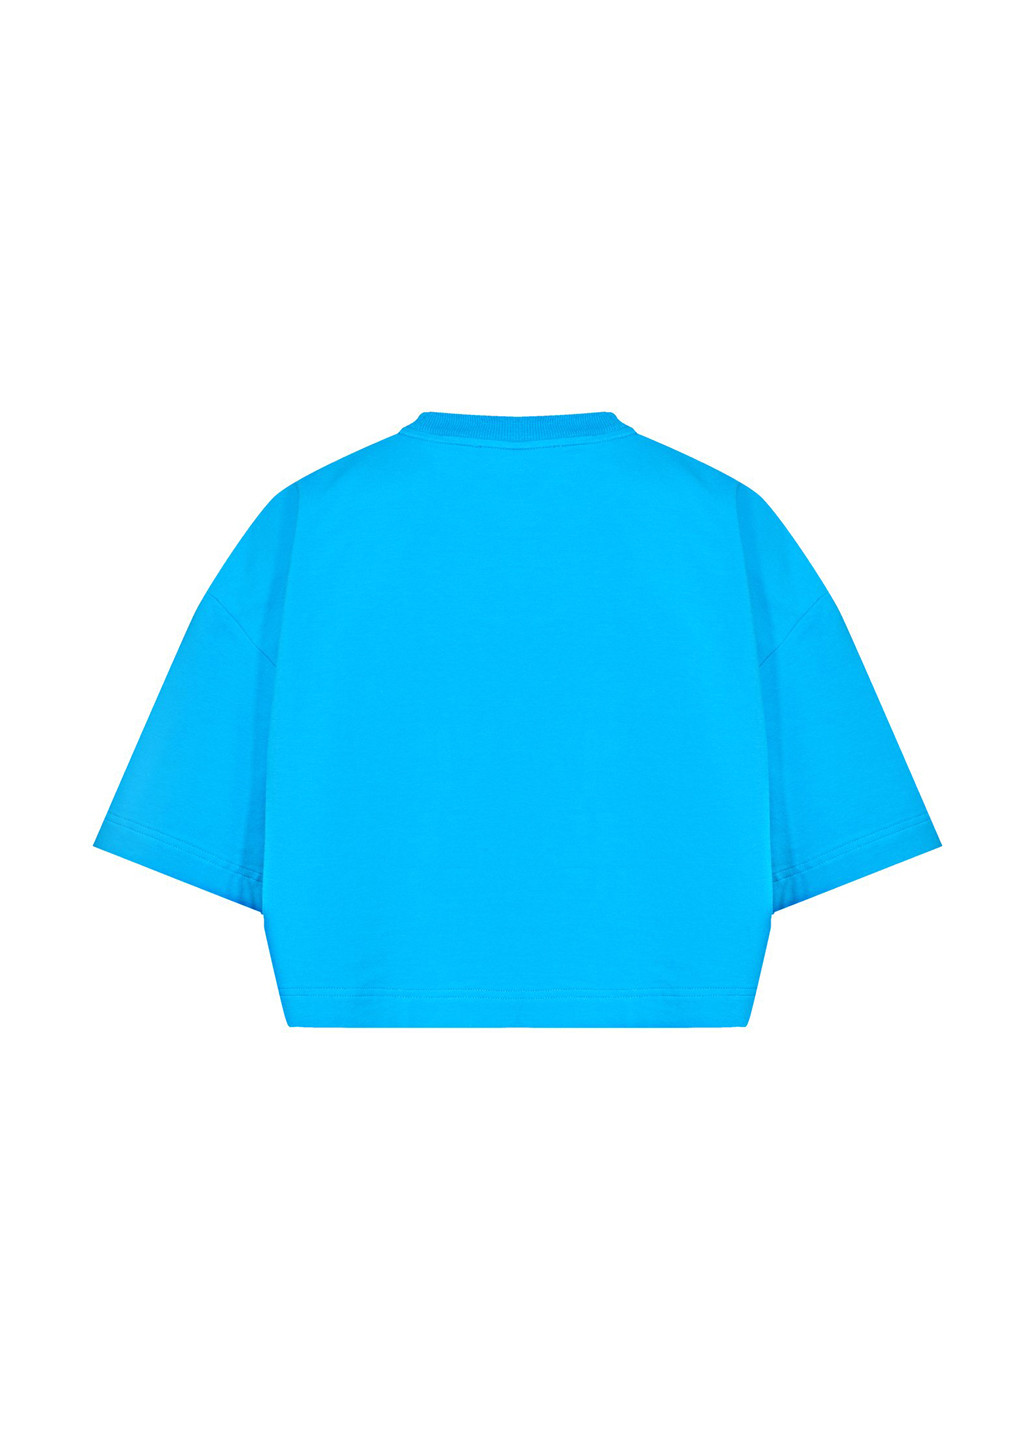 Синя літня футболка PRPY